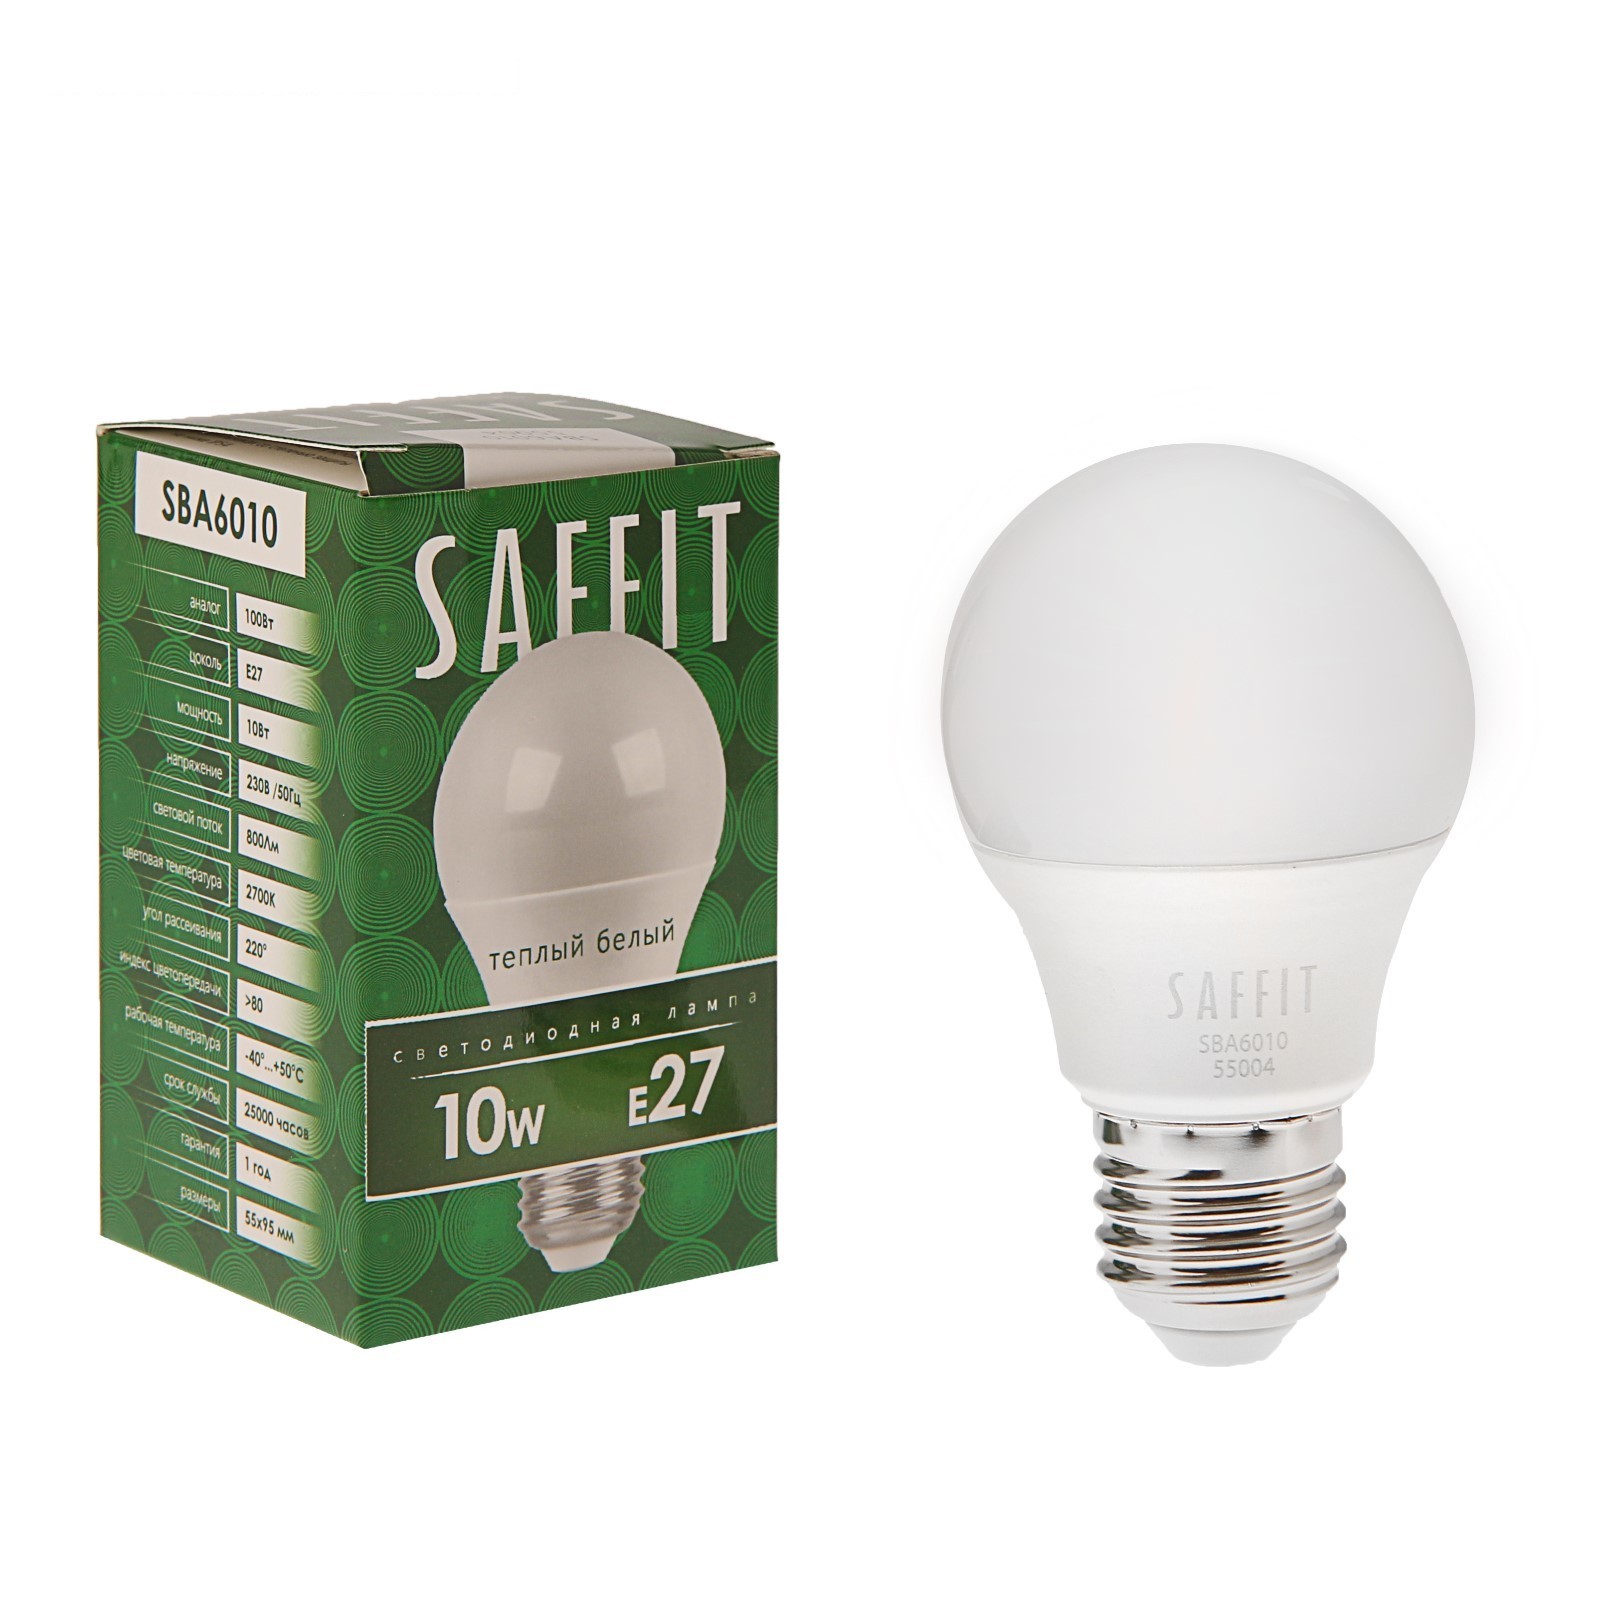 Лампа светодиодная Saffit SBA6010 10W 2700K 230V E27 A60 груша (Изображение 1)